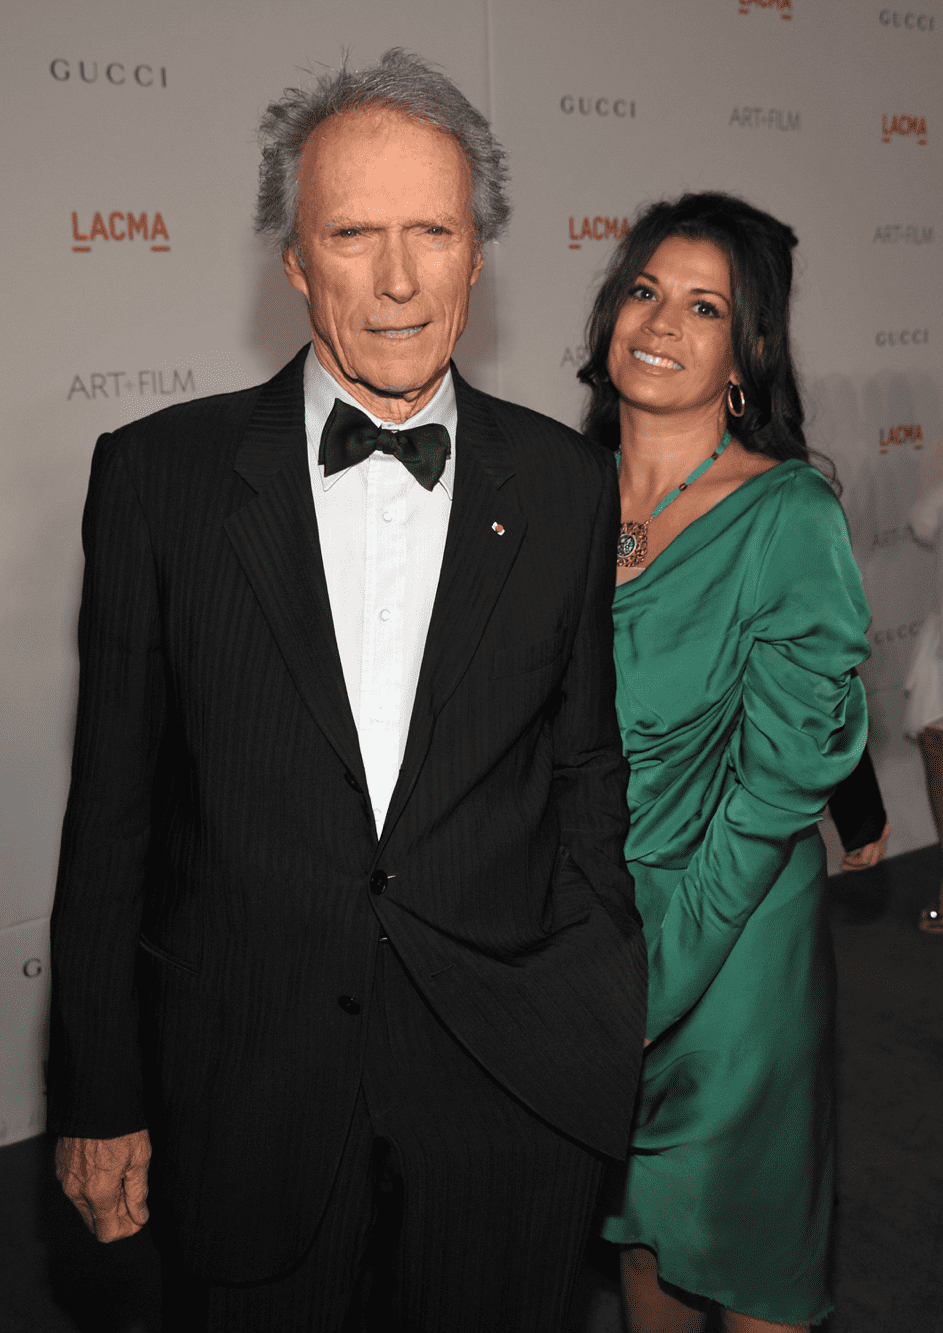 Clint Eastwood und Frau Dina Eastwood bei der LACMA Art + Film Gala zu Ehren von Clint Eastwood und John Baldessari im Los Angeles County Museum of Art am 05.11.11. | Quelle: Getty Images